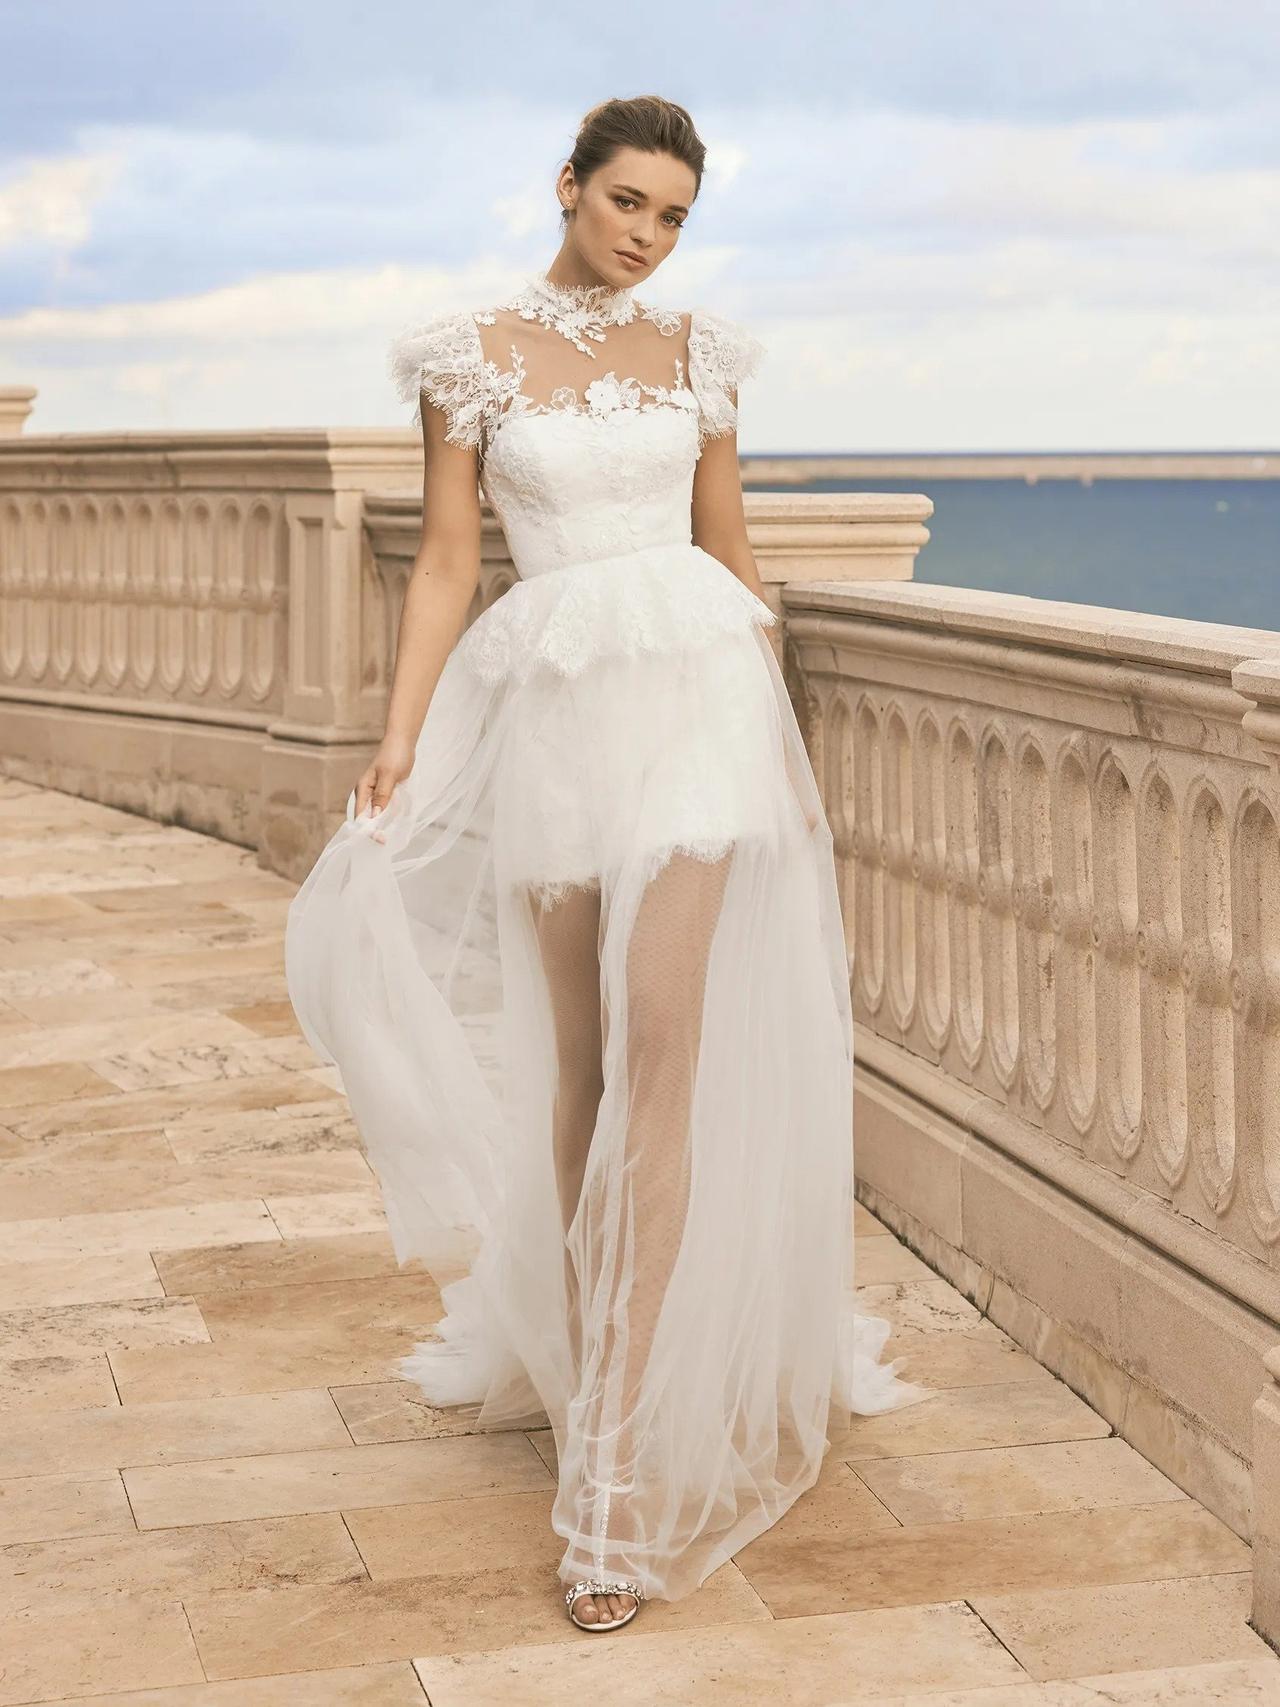 35 Stylish Short Wedding Dresses - hitched.co.uk